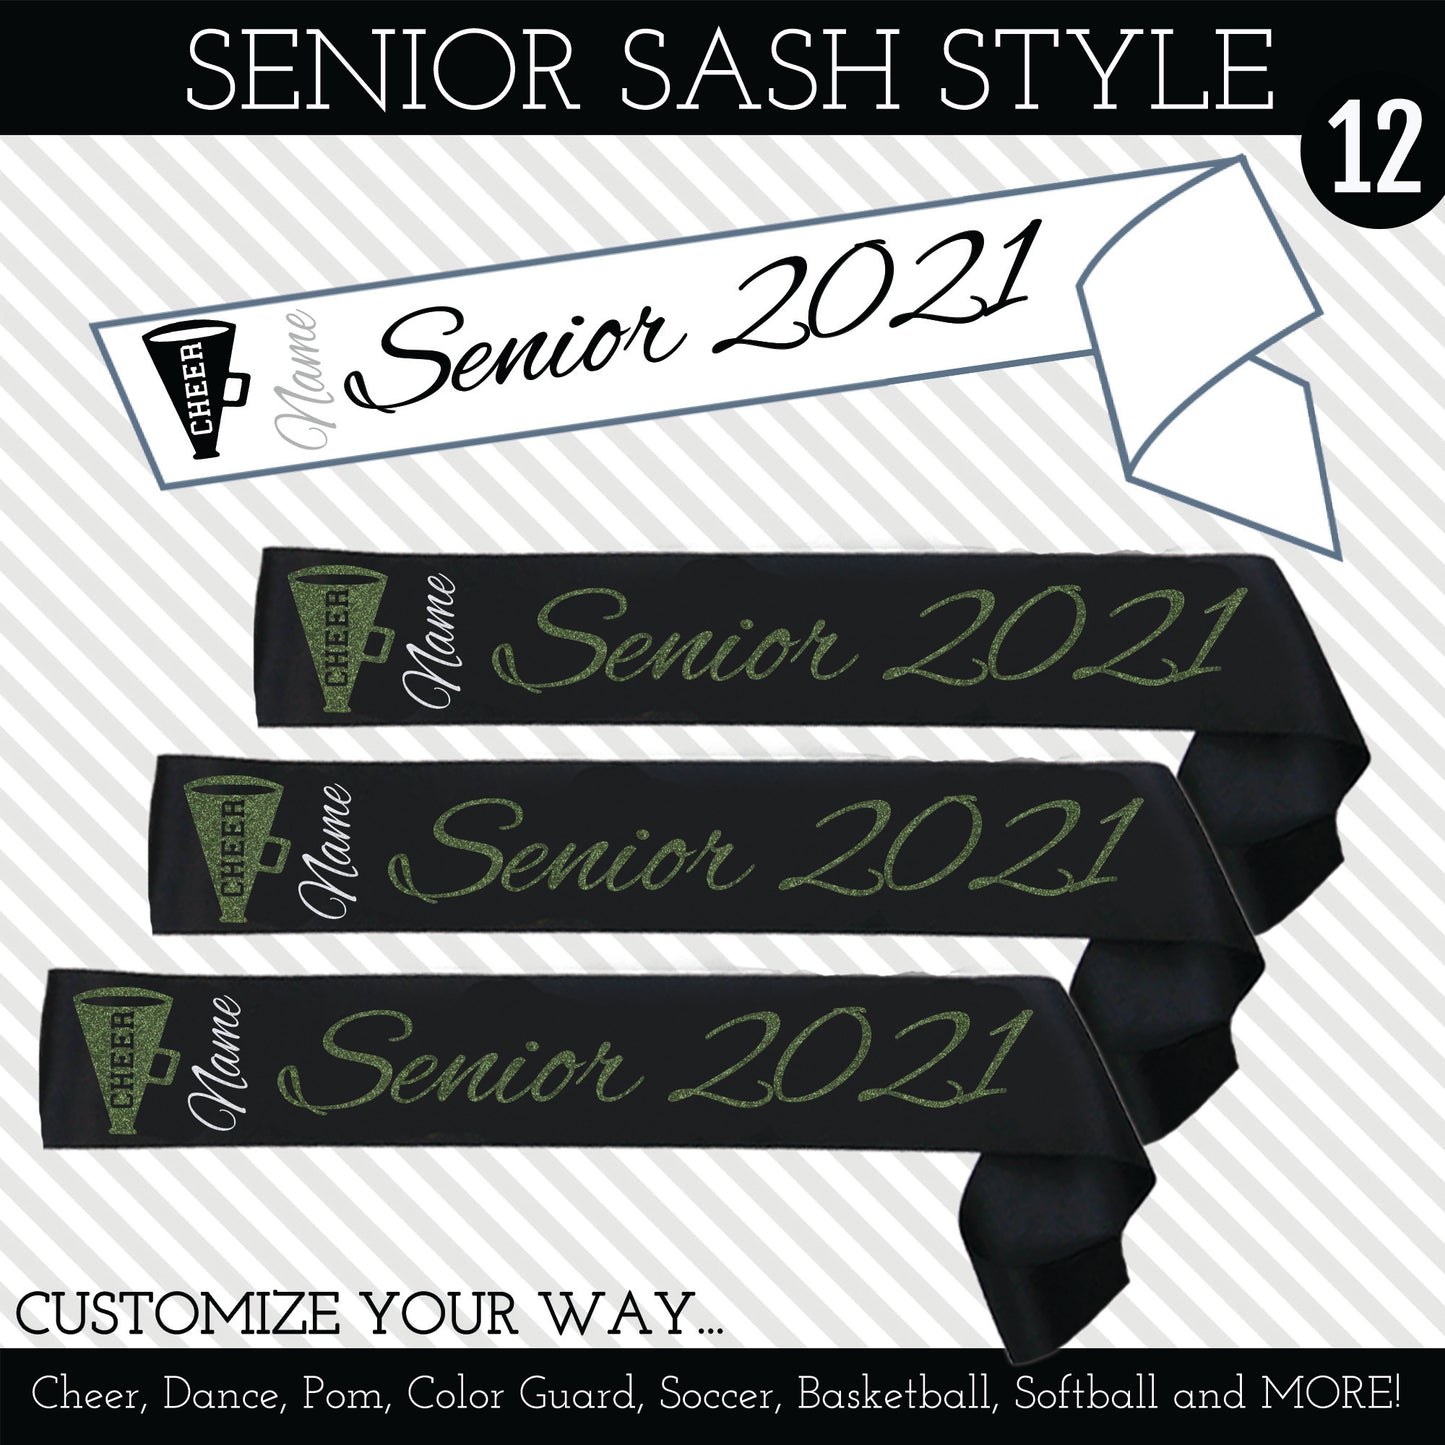 Senior Sash Style 12